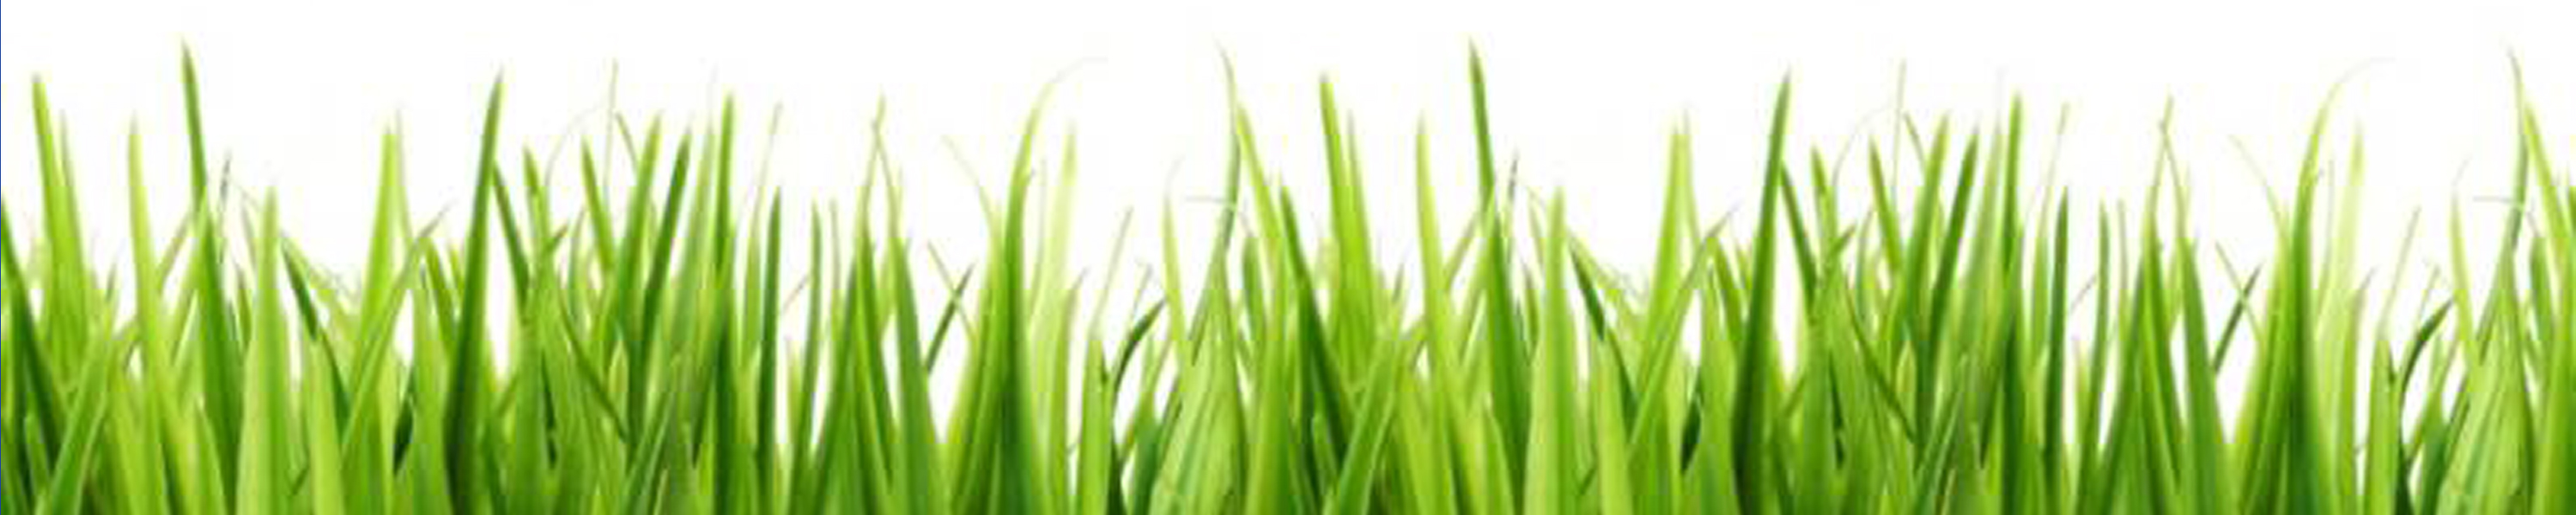 Grass clip art clipart image